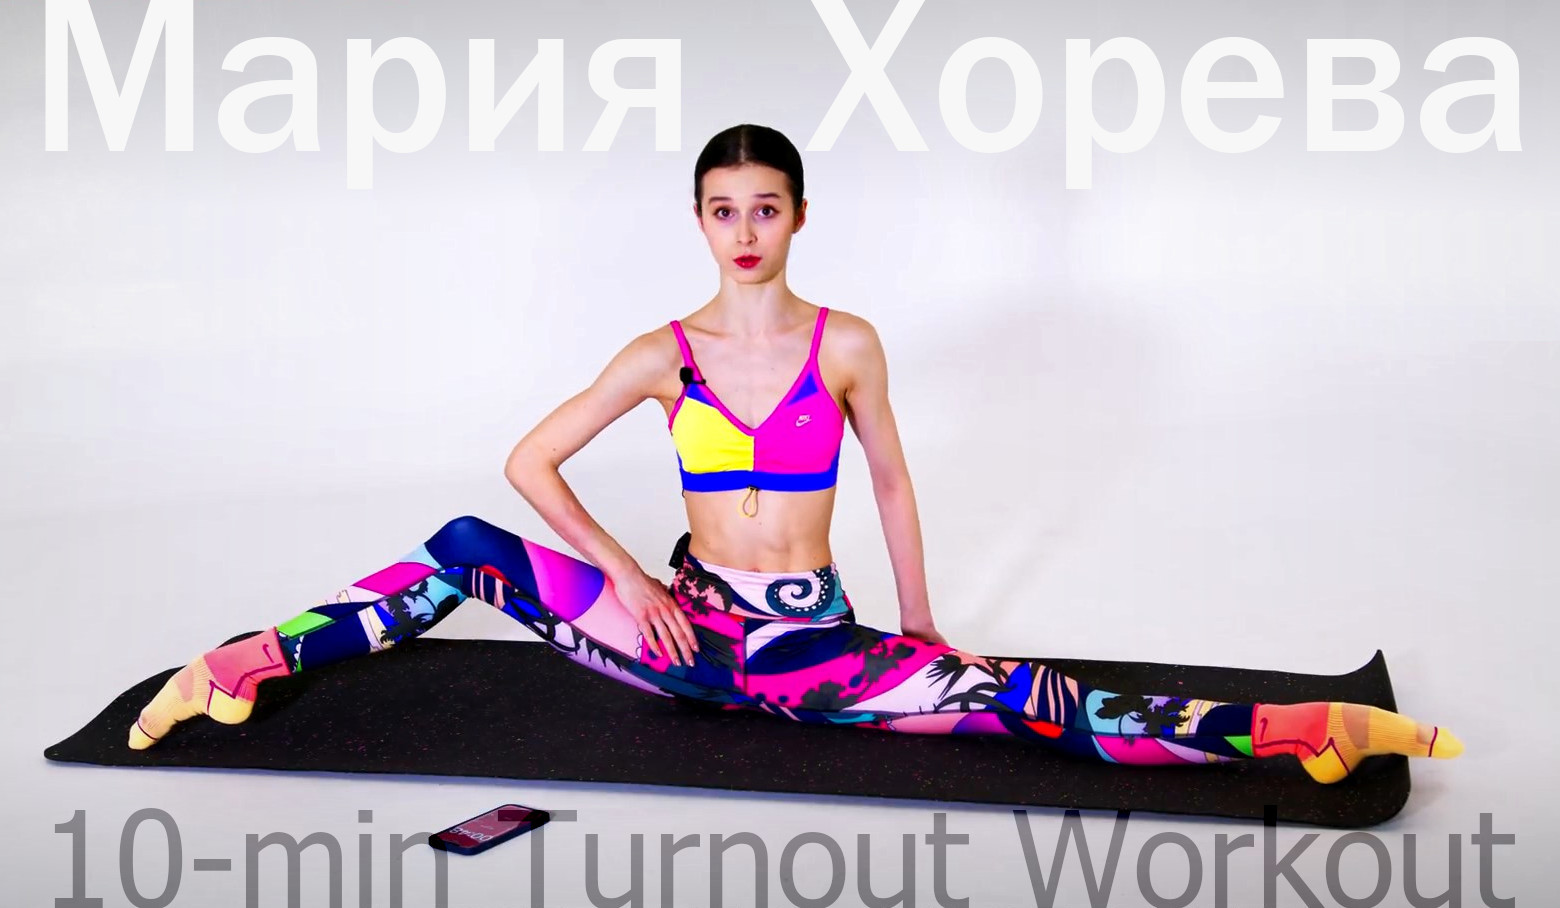 Maria Khoreva - 10-min Turnout Workout